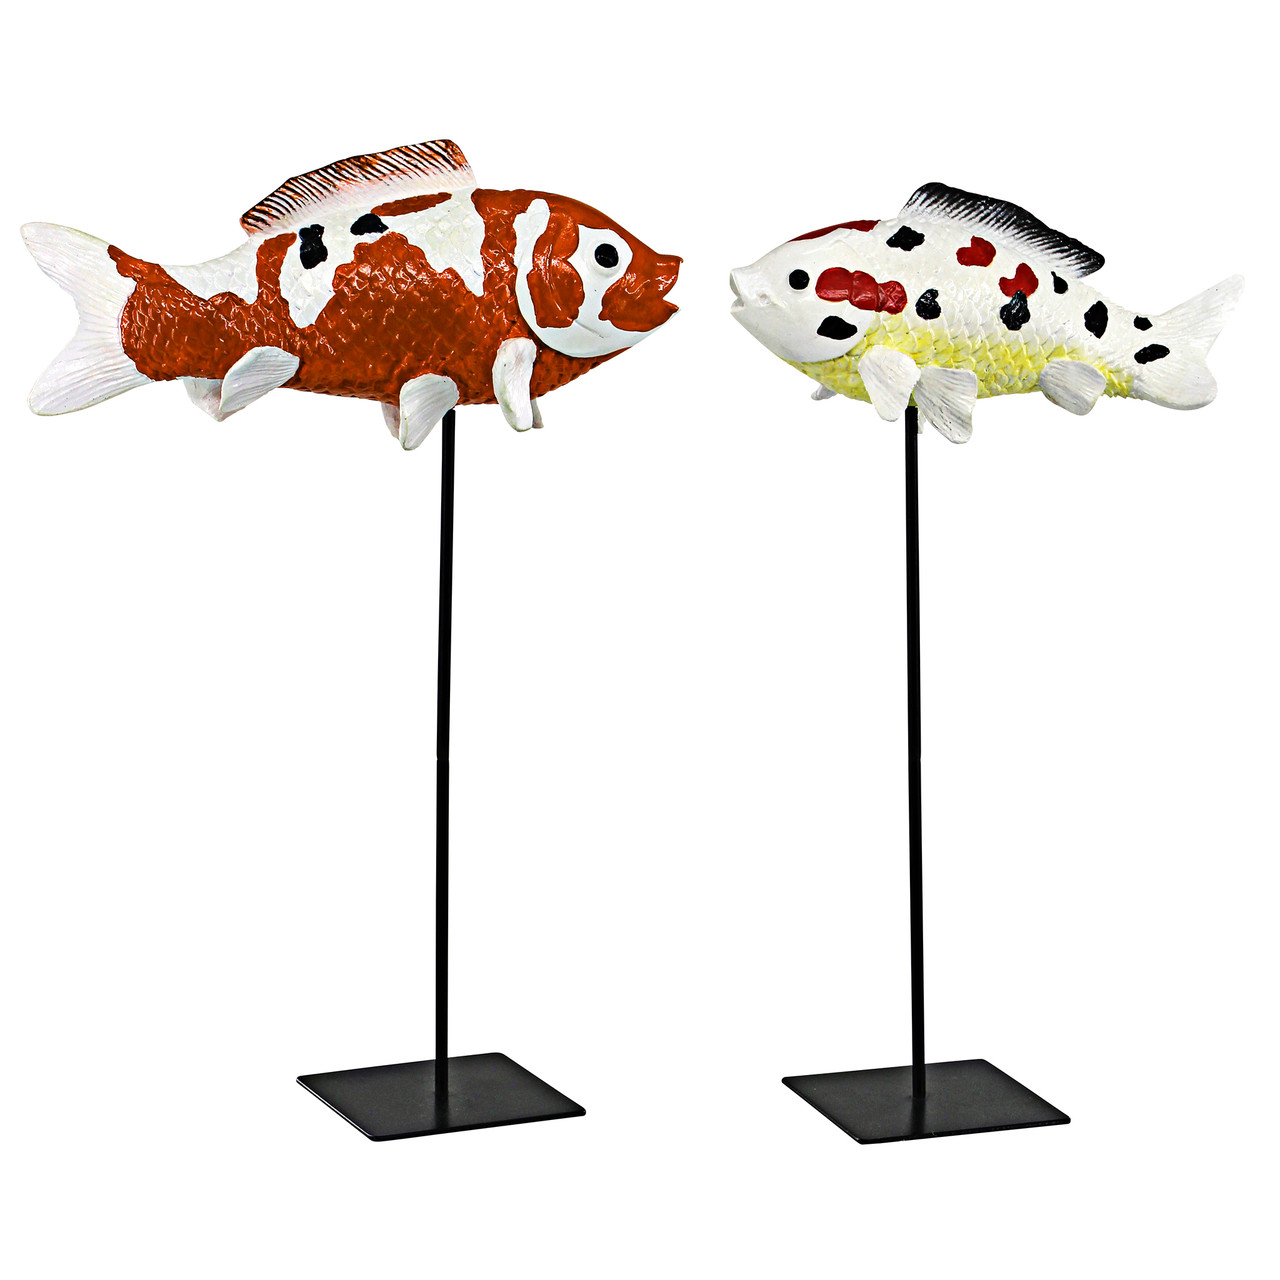 Premium Vector  Japan koi fish in showa coloration pattern